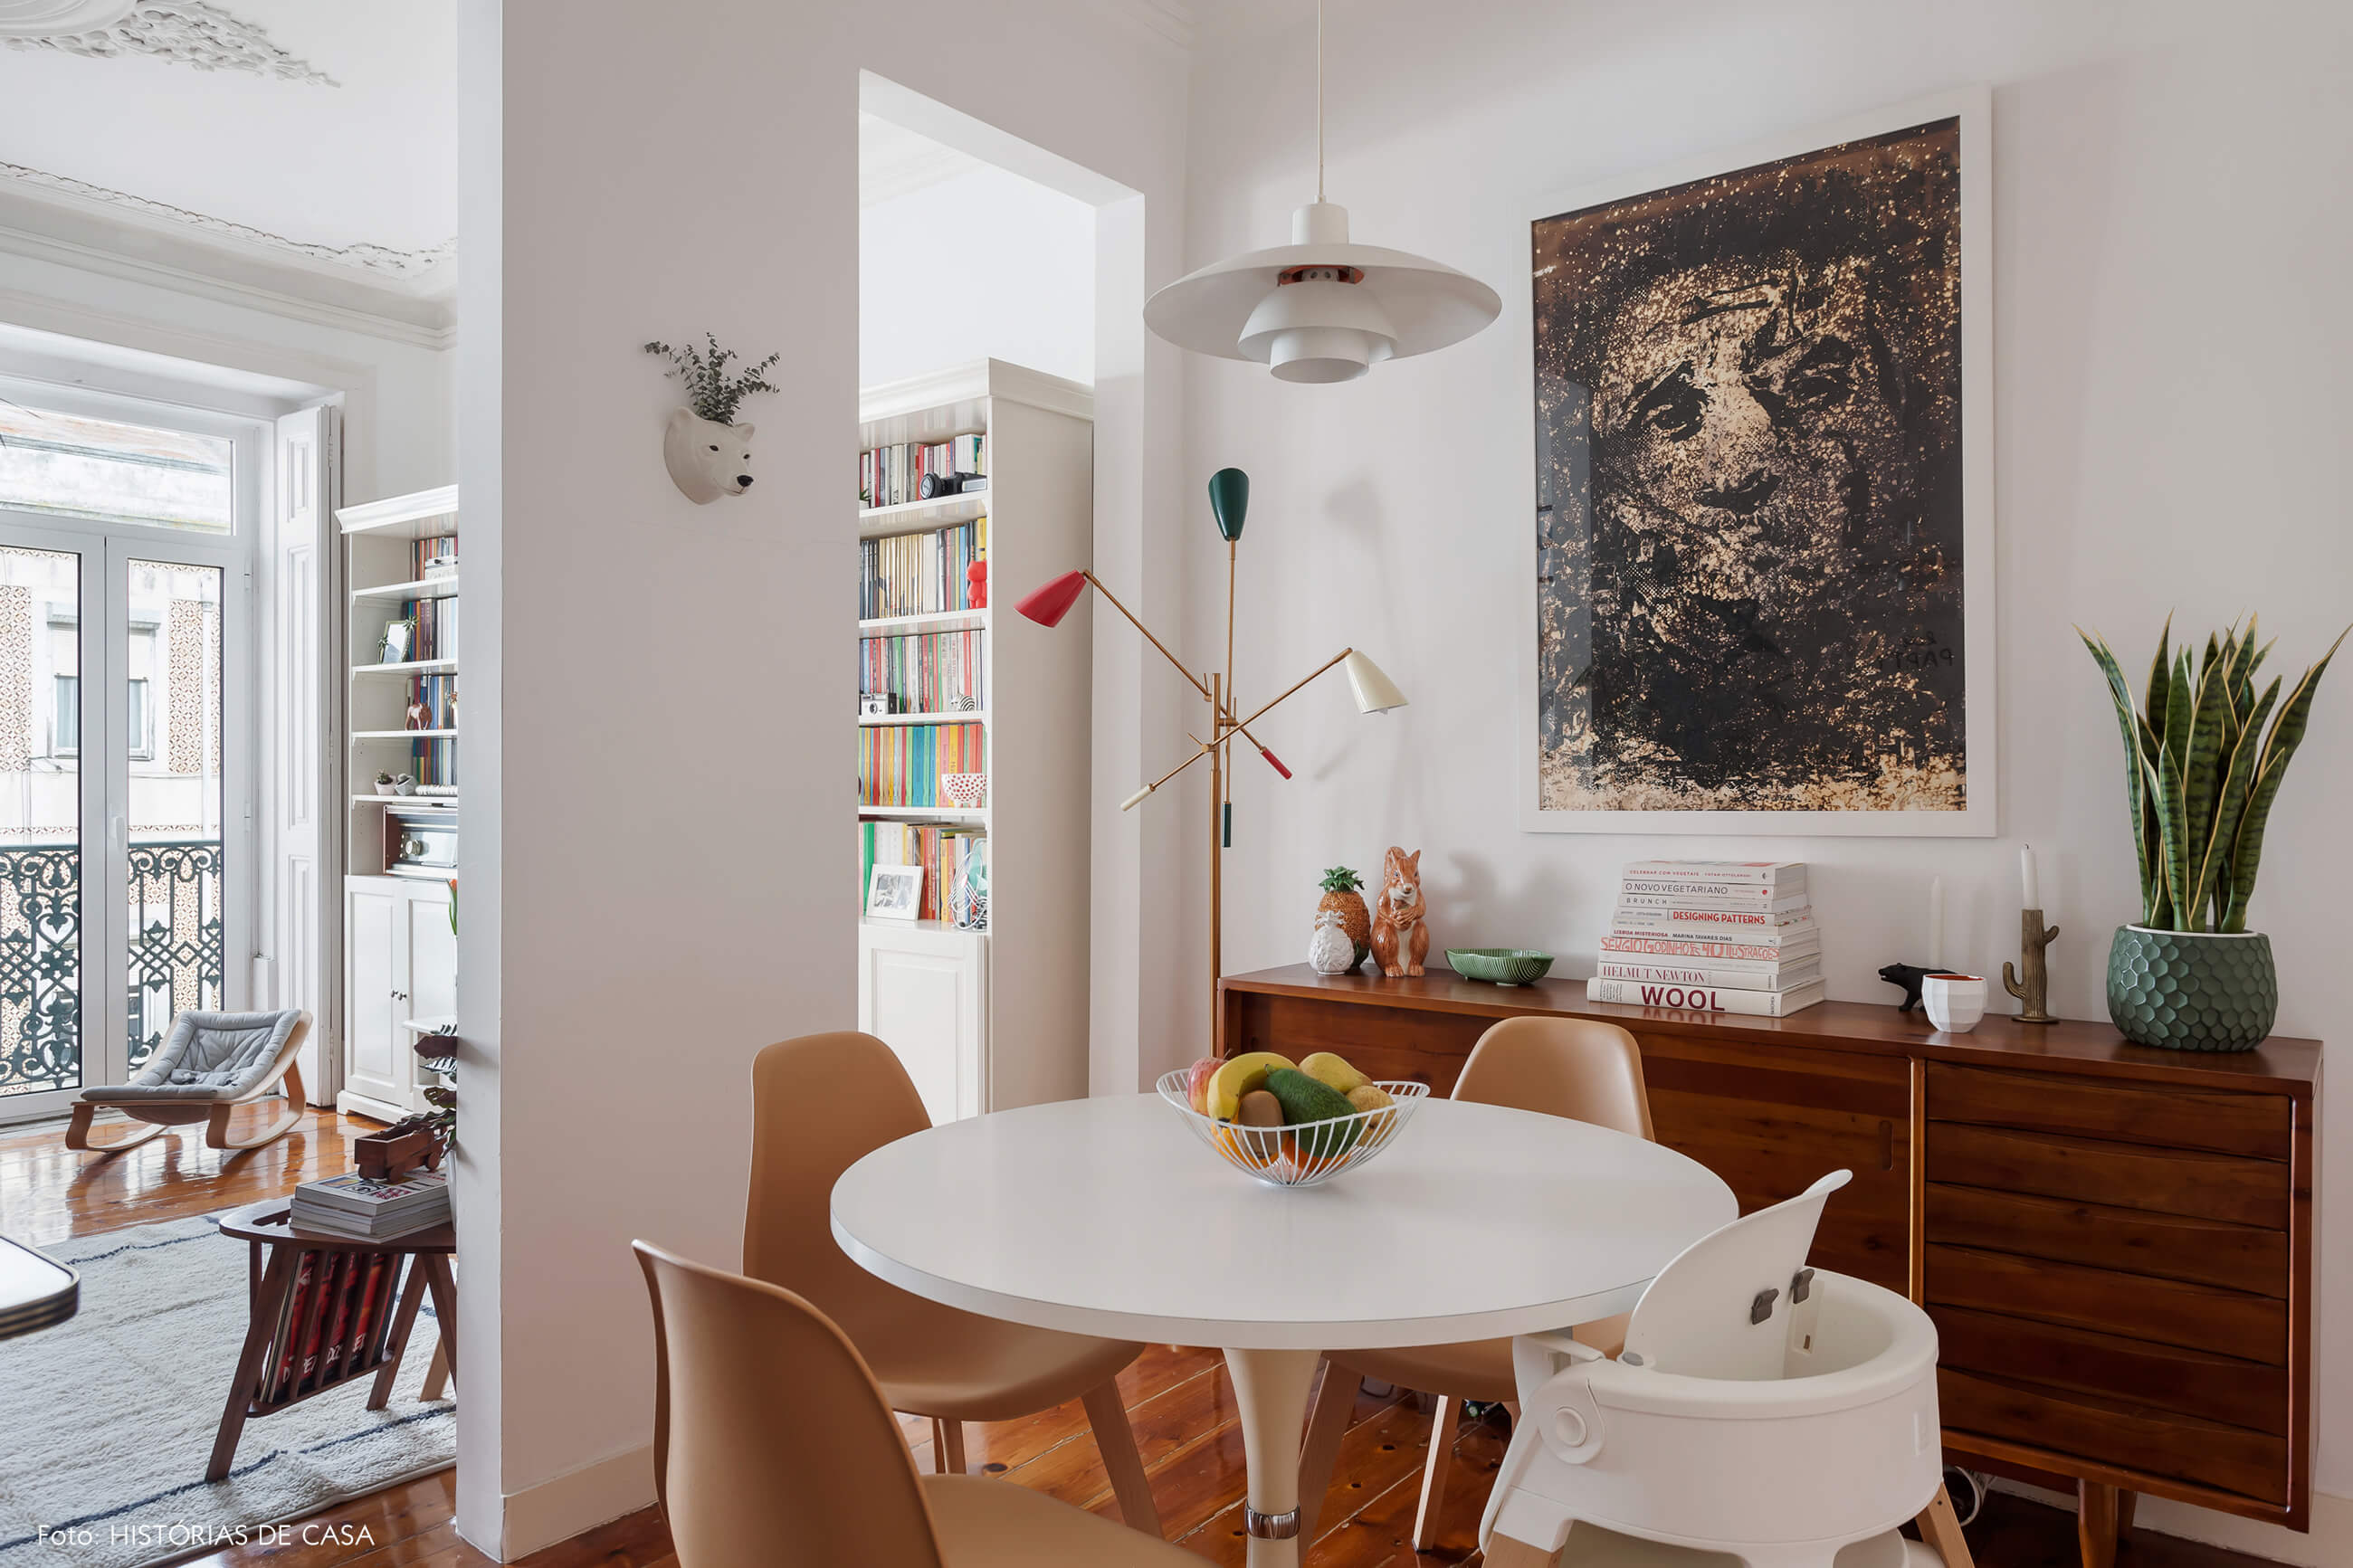 Apartamento em Portugal, decoração da sala de jantar com móveis vintage